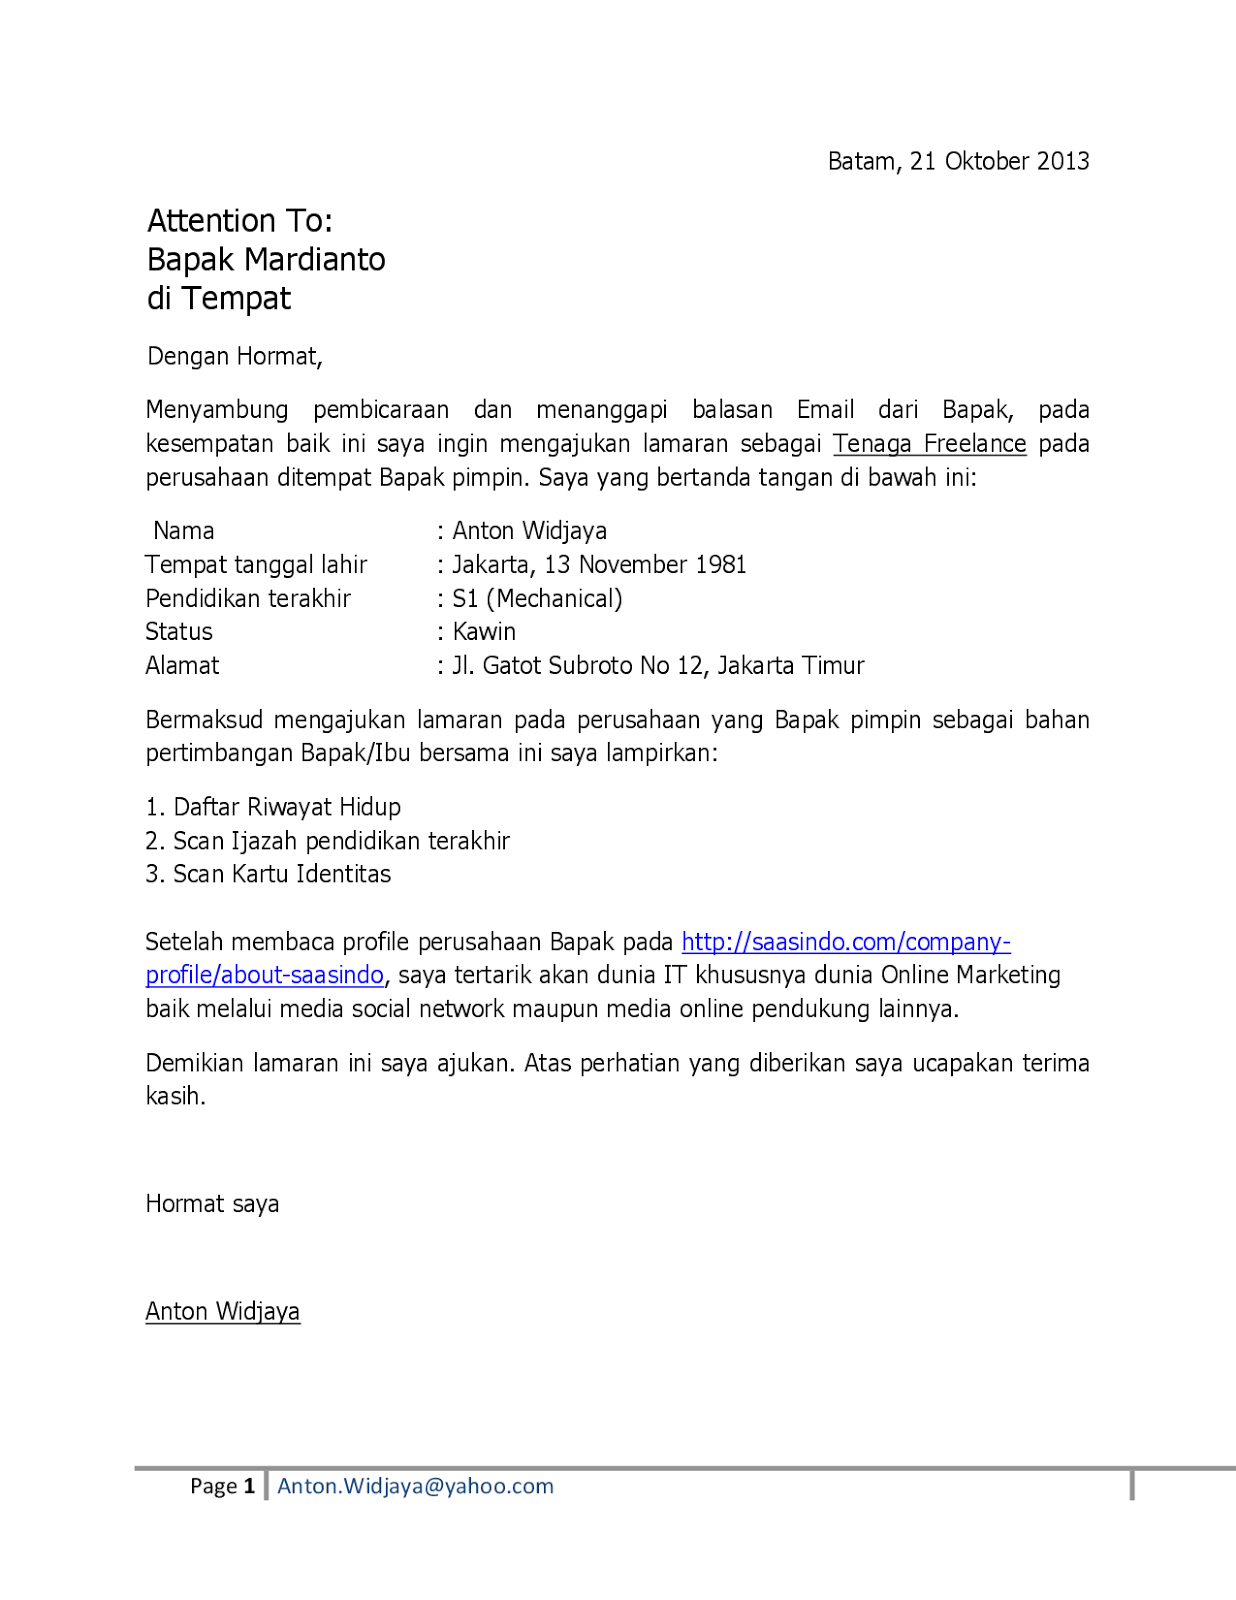 Contoh Offer Letter Kerja Bahasa Melayu 4 Contoh Surat Letak Jawatan